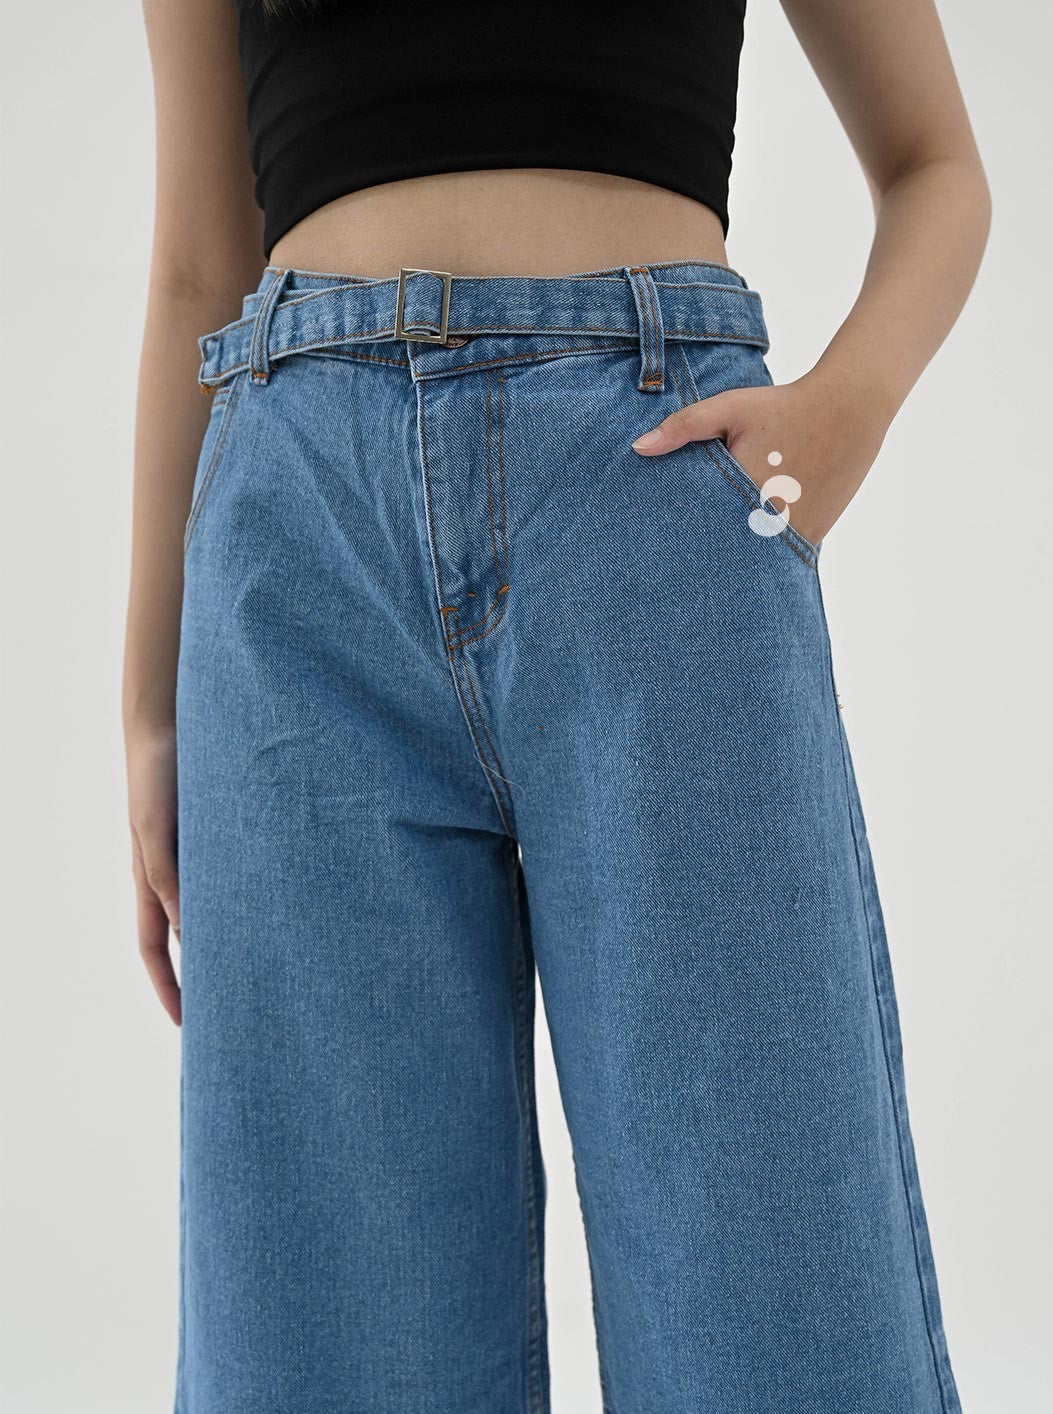 Triss Jeans